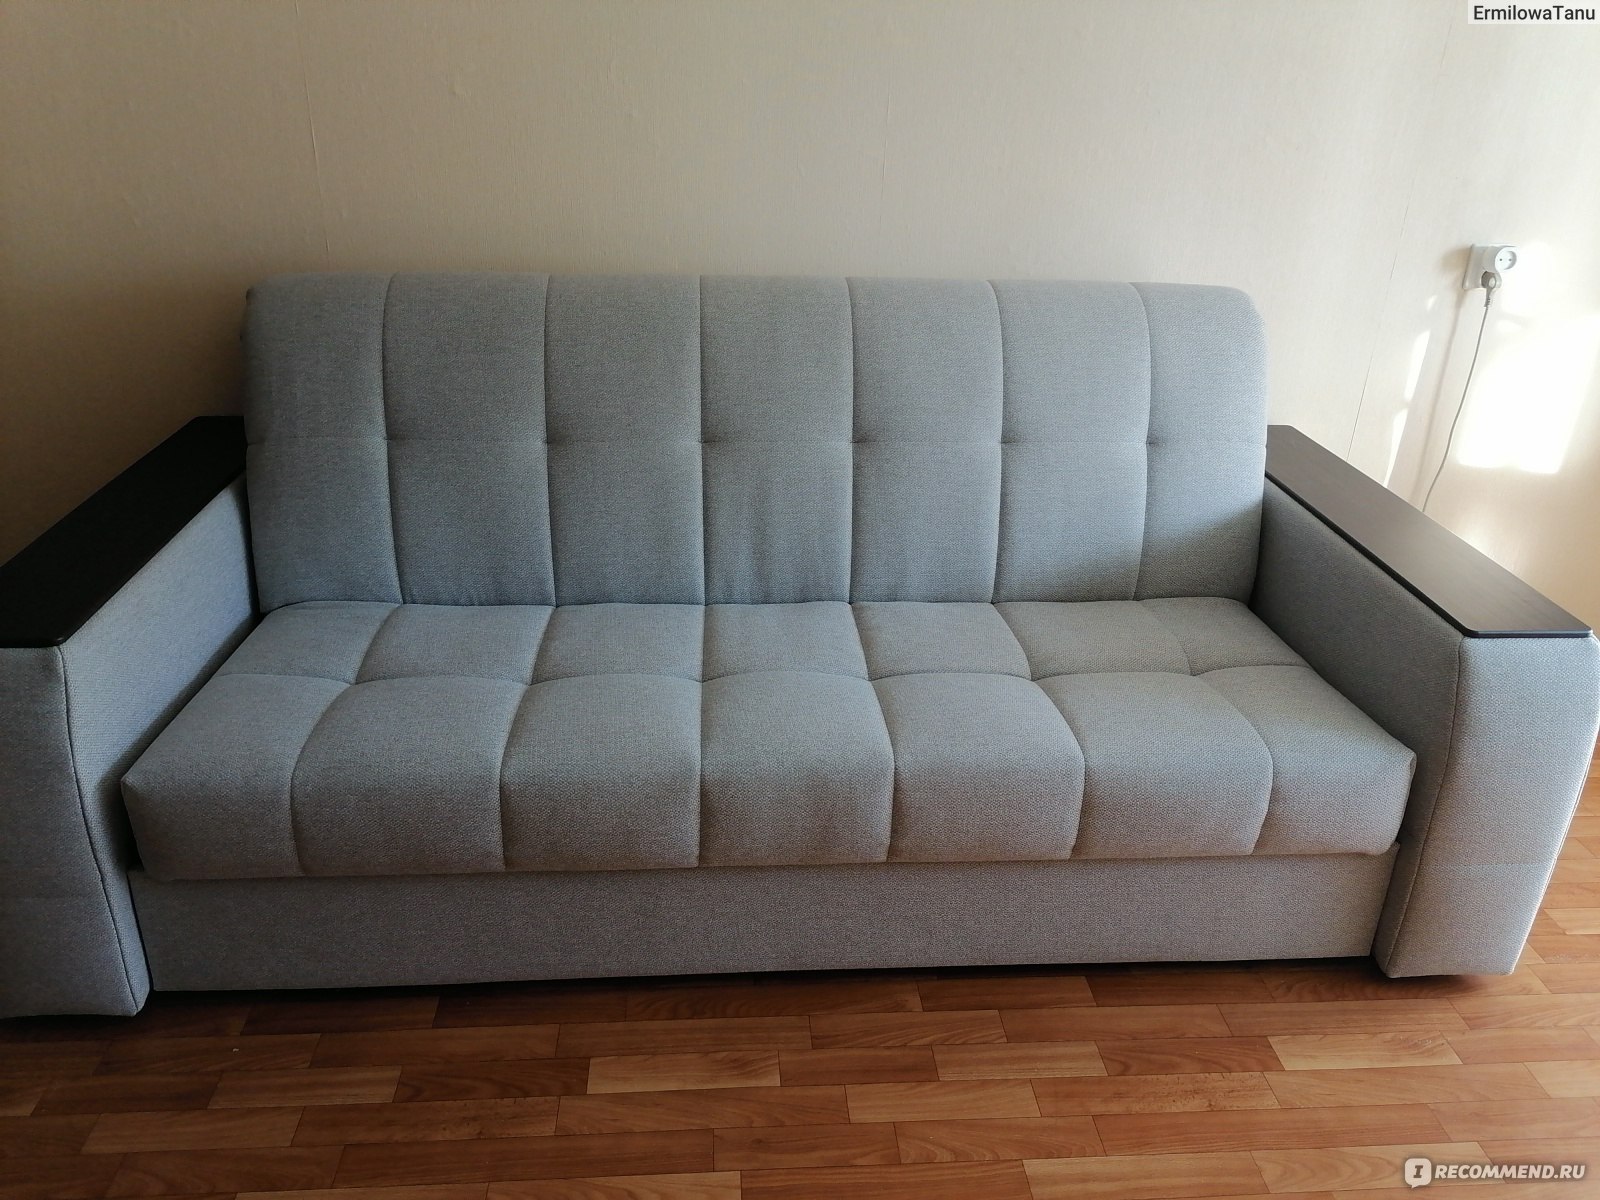 Прямой диван Порто Rivalli - «Оригинальная модель с ящиками для хранения вподлокотниках»